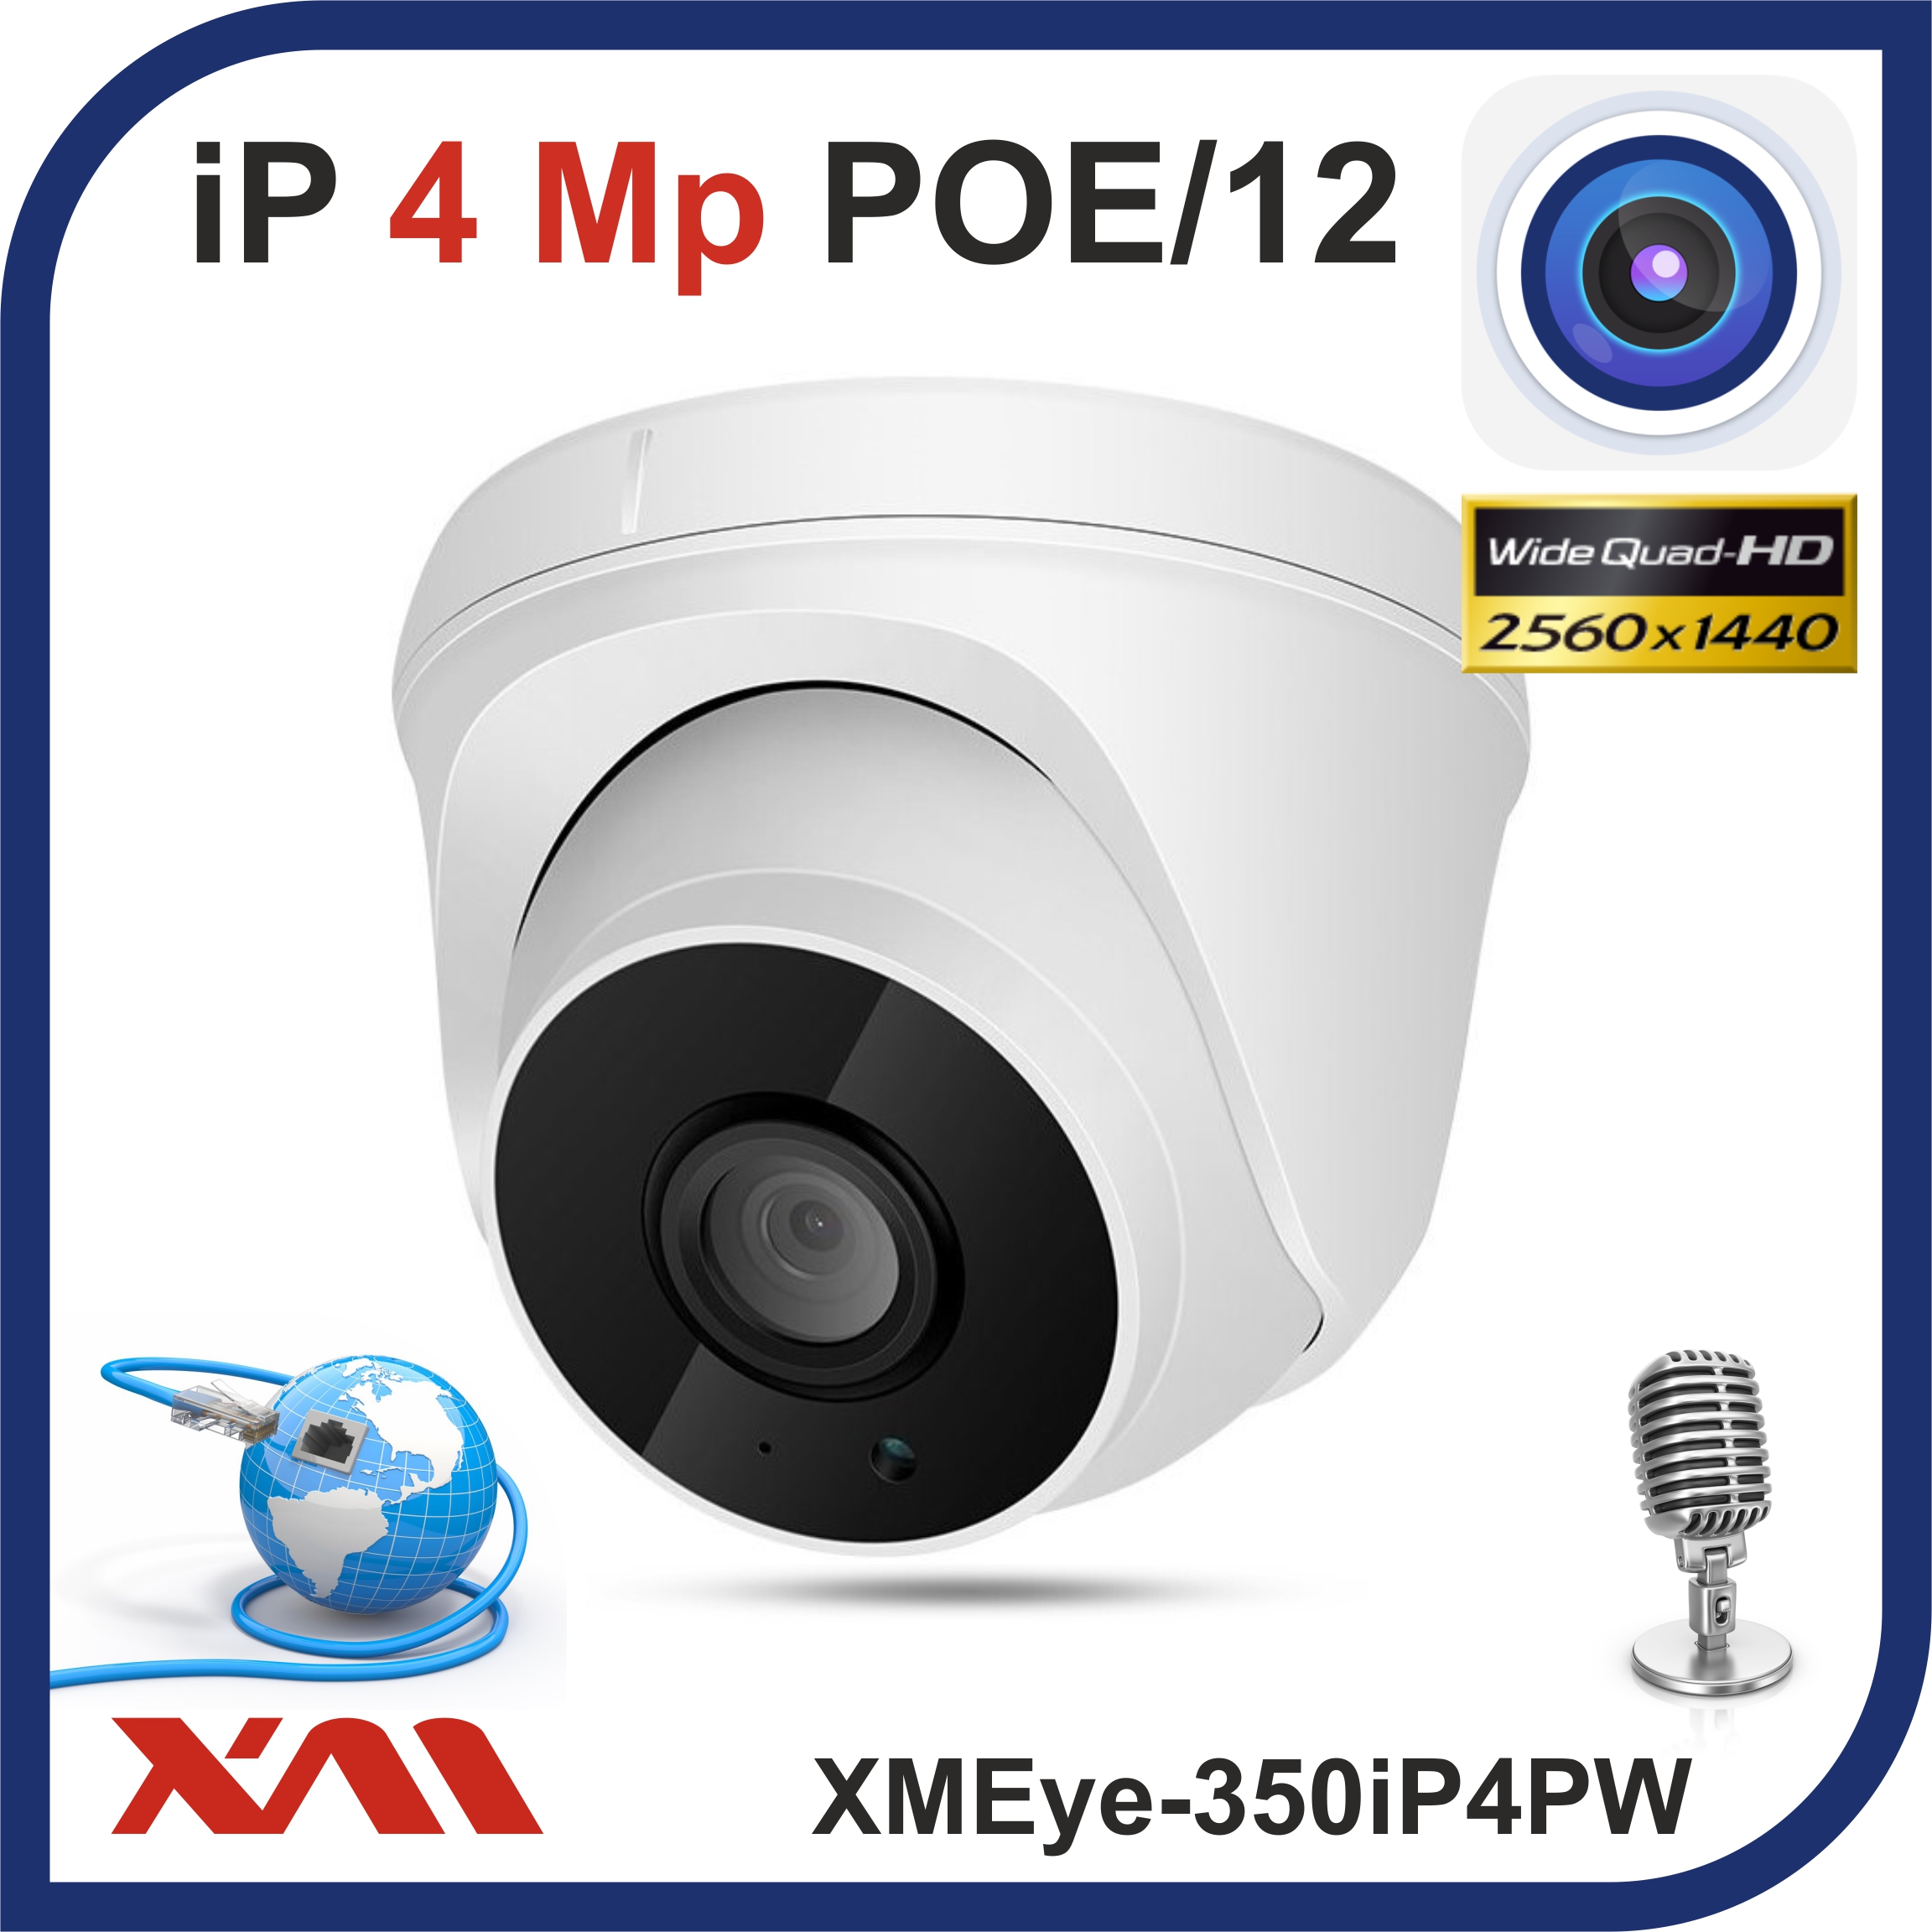 Камера видеонаблюдения XMEye 350iP4PW-2.8 купольная с микрофоном IP, 4Mpx, 1440P, POE/12 камера видеонаблюдения xmeye купольная мультиформатная 350ahd5pw 2 8